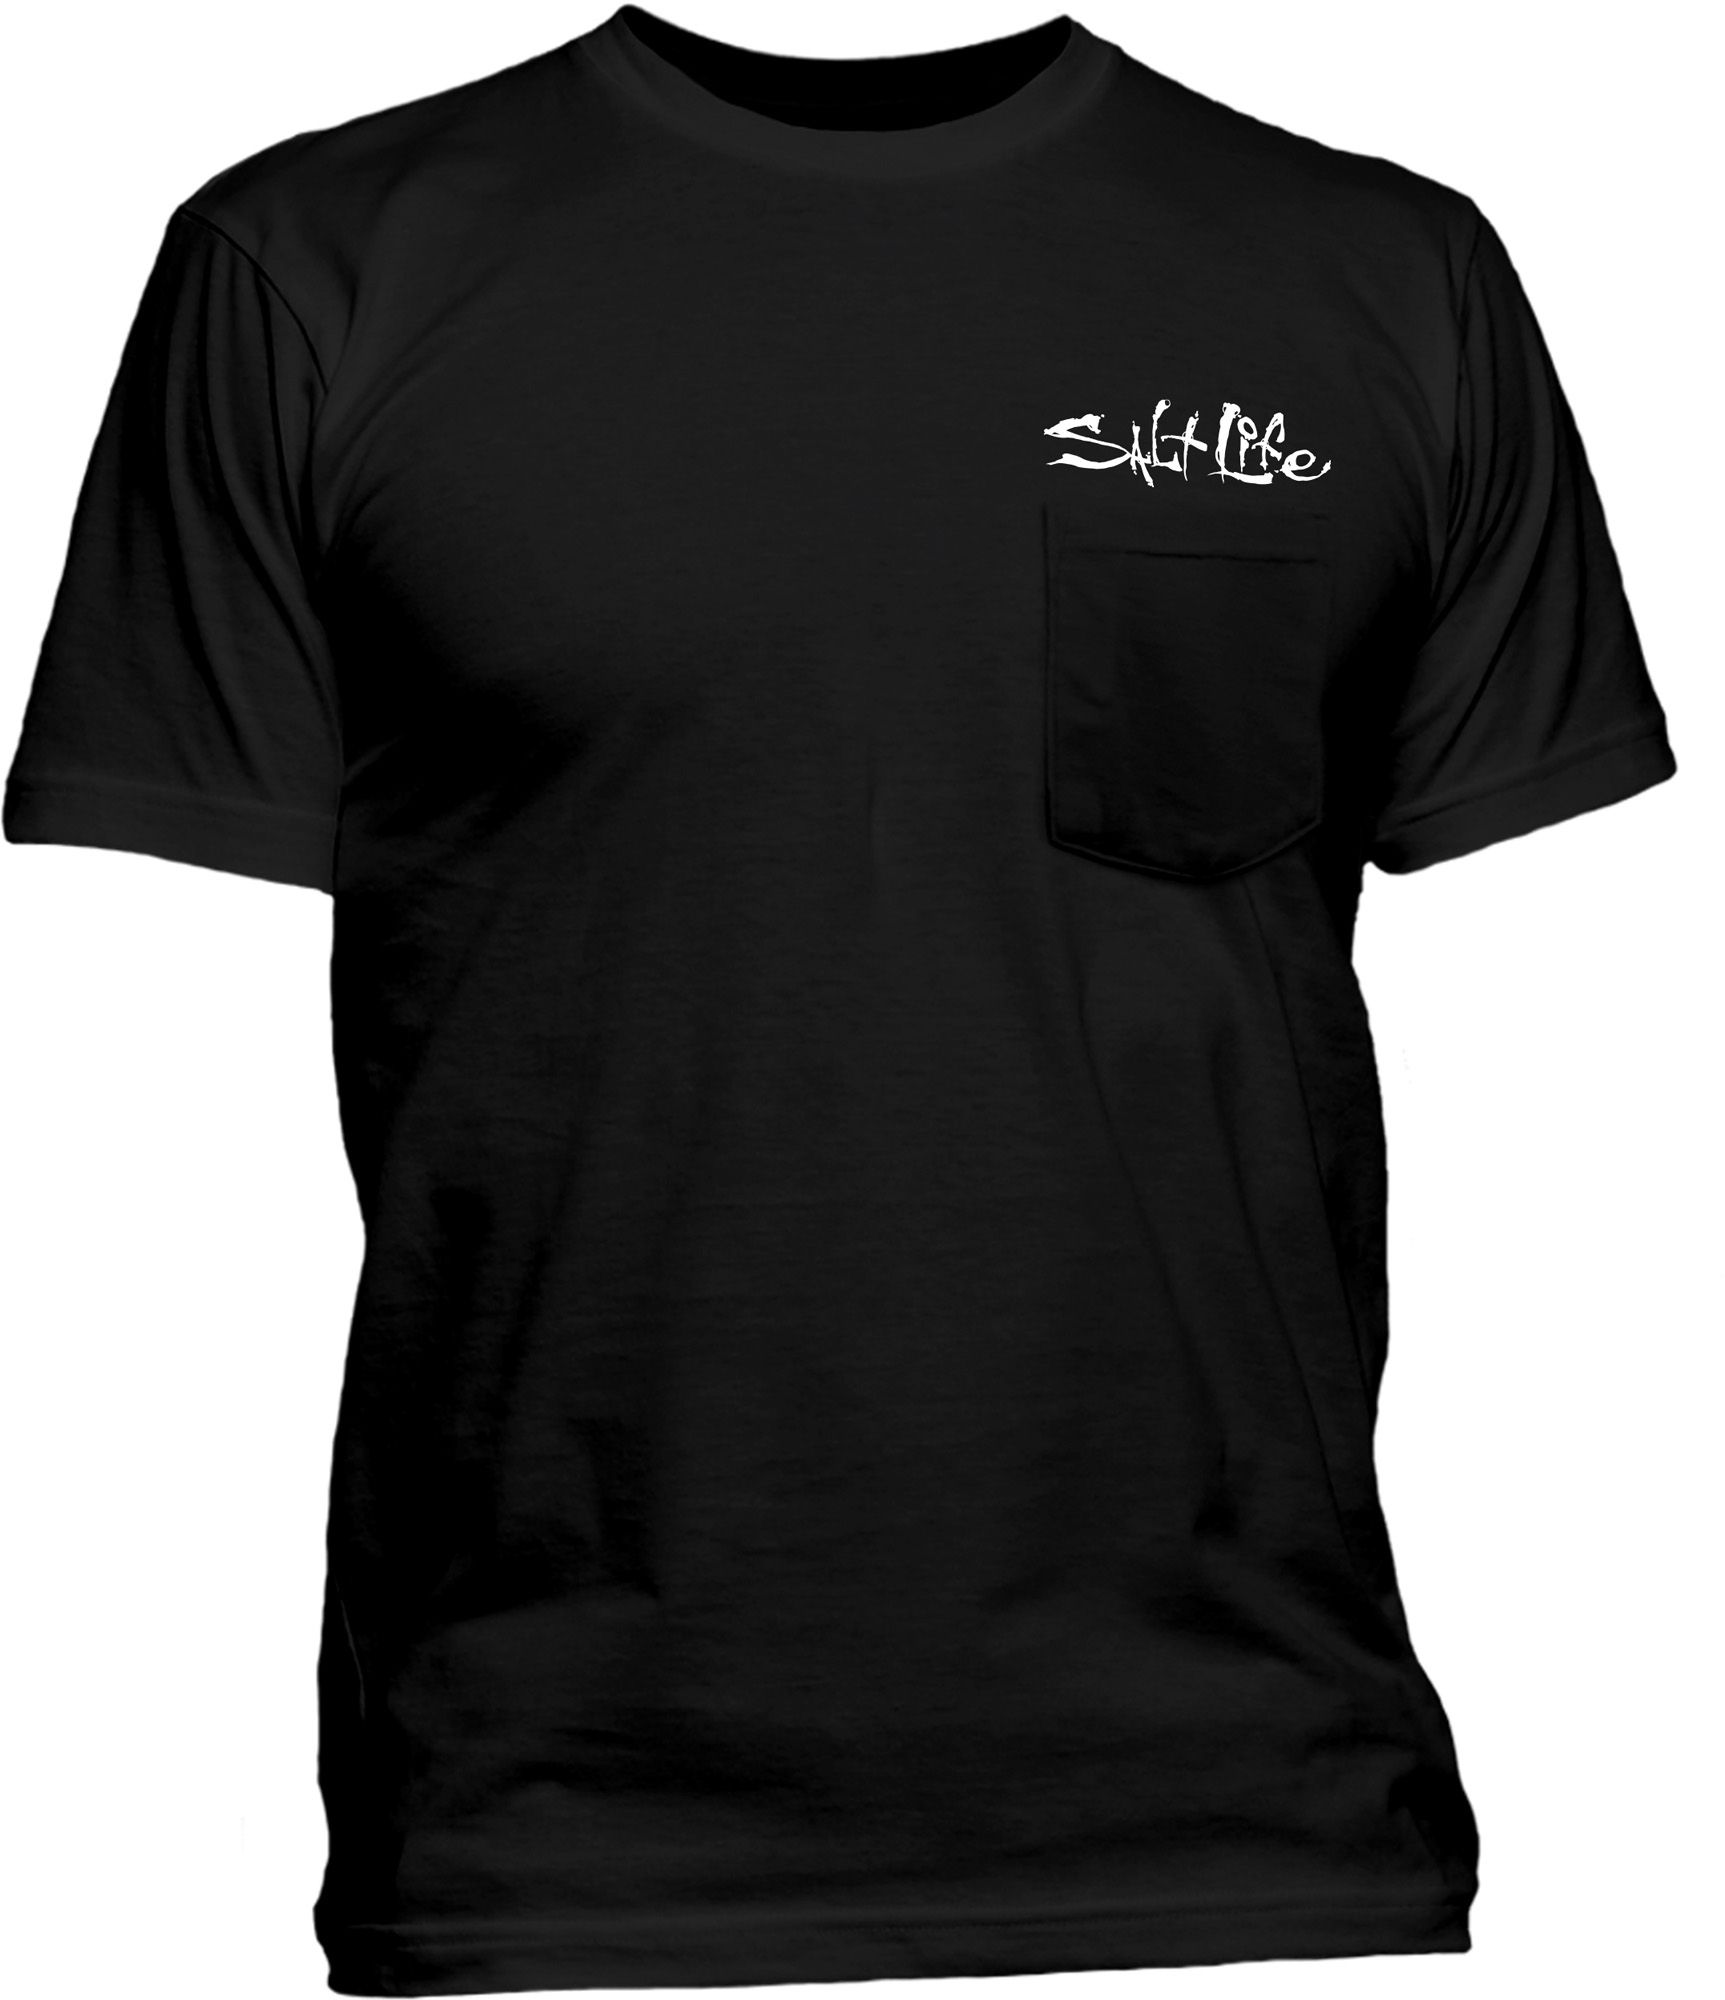 Salt Life Men's Weathered Dive Flag Pocket T-Shirt